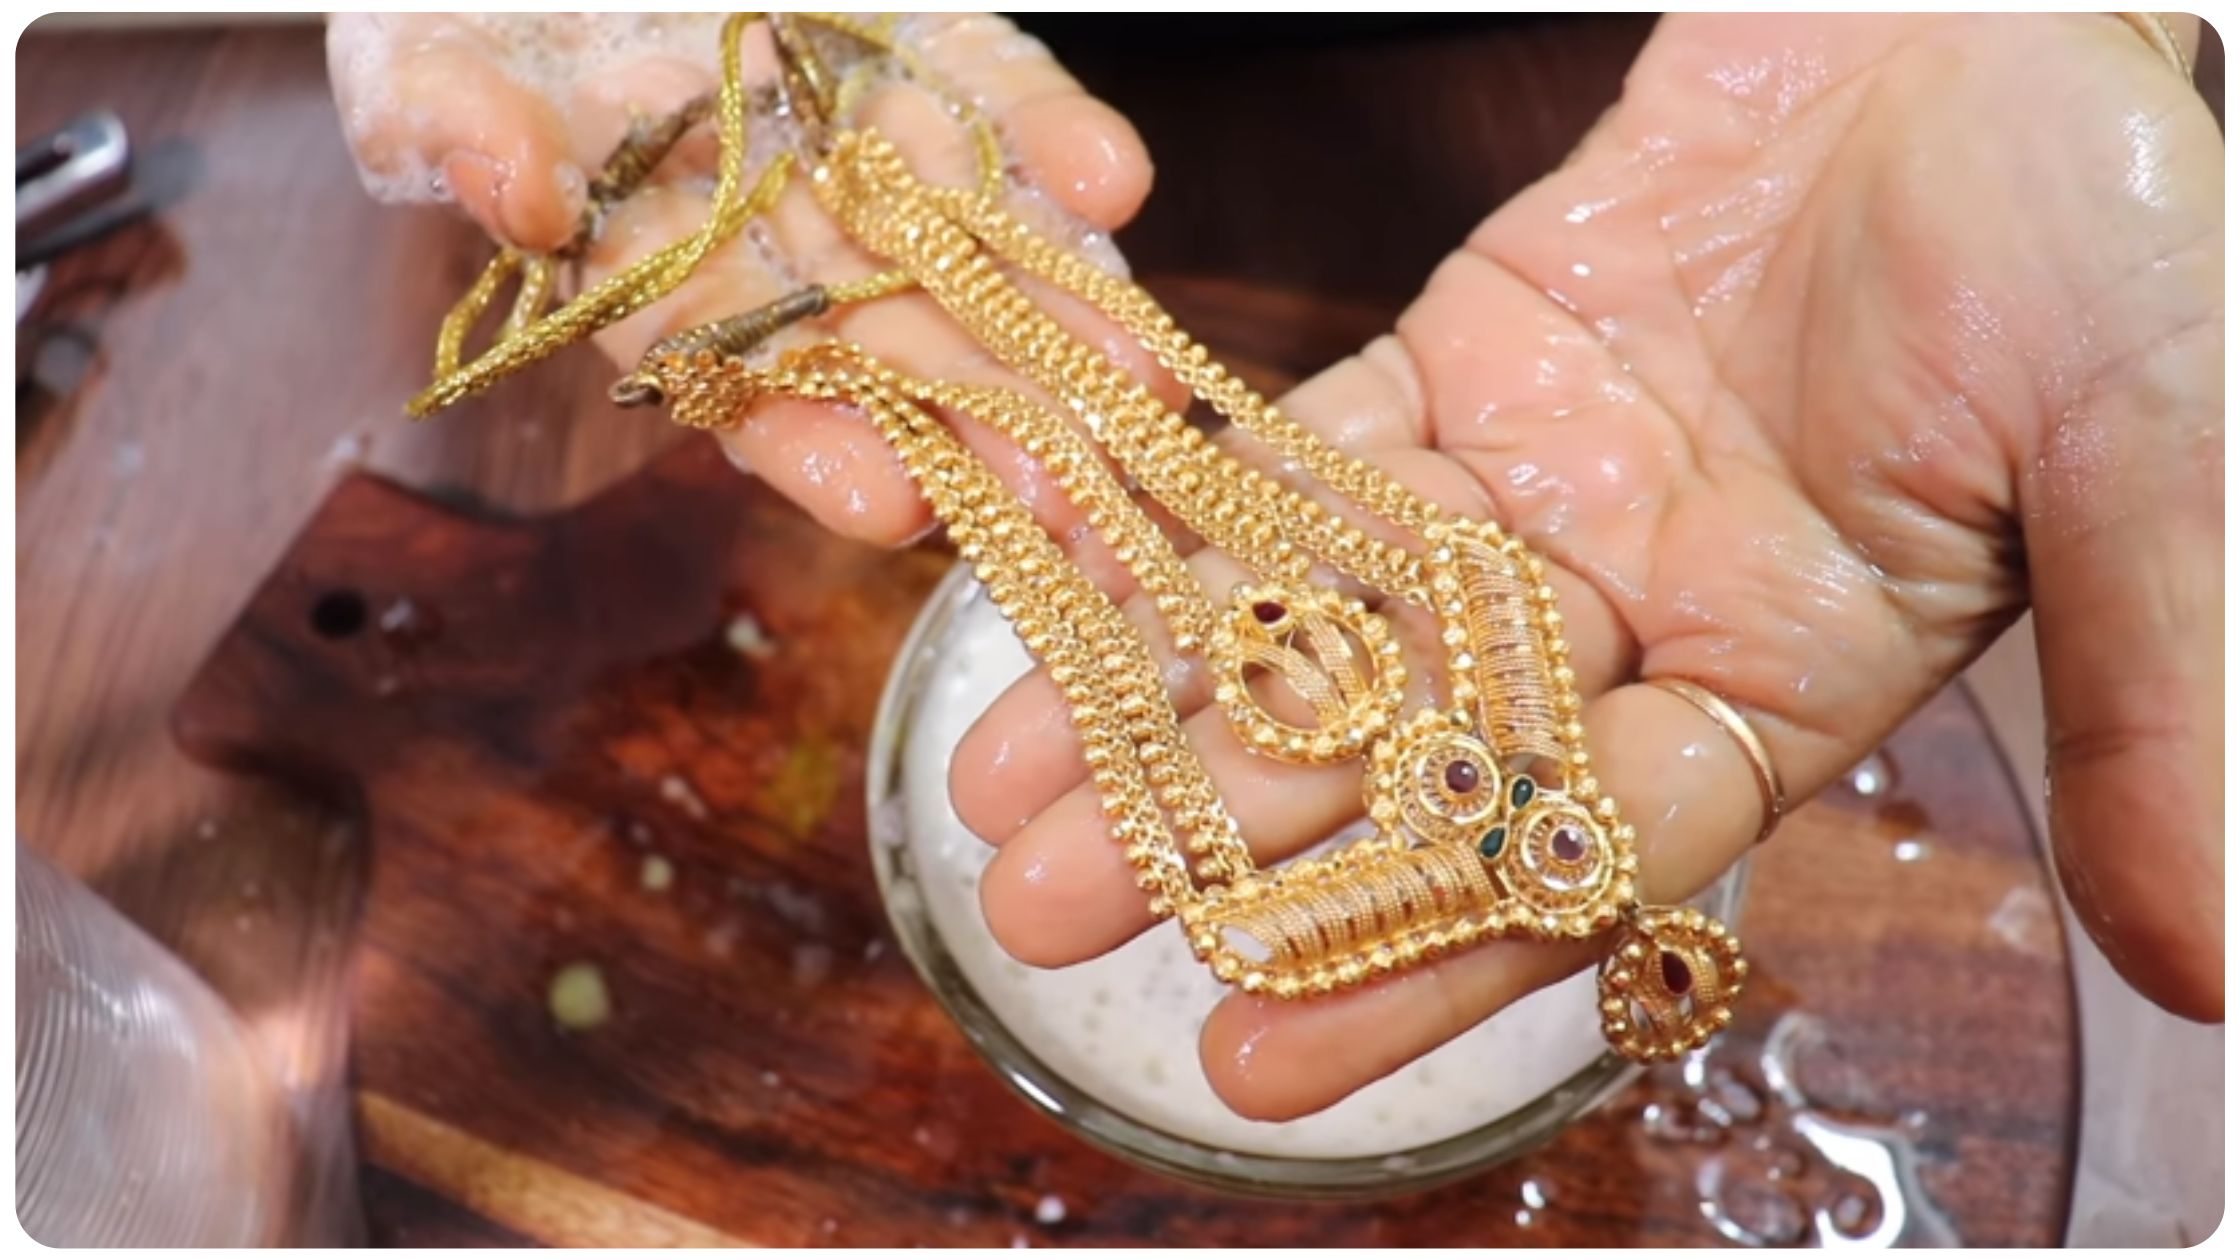 jewellery cleaning tips in gujarati